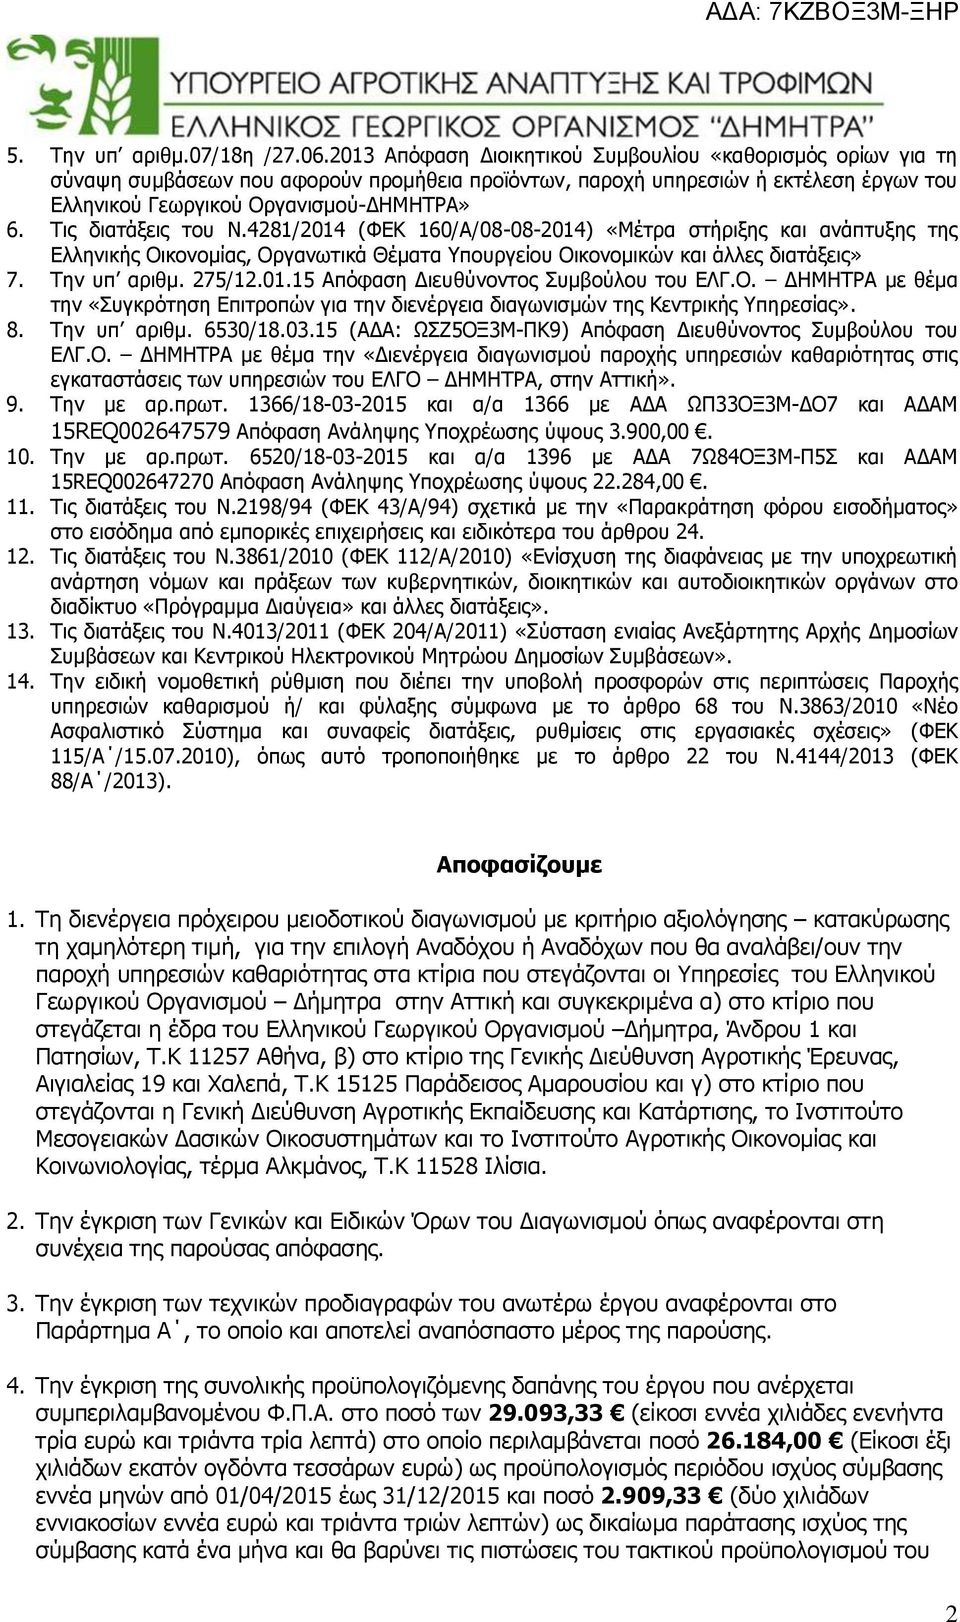 Τις διατάξεις του Ν.4281/2014 (ΦΕΚ 160/Α/08-08-2014) «Μέτρα στήριξης και ανάπτυξης της Ελληνικής Οικονομίας, Οργανωτικά Θέματα Υπουργείου Οικονομικών και άλλες διατάξεις» 7. Την υπ αριθμ. 275/12.01.15 Απόφαση Διευθύνοντος Συμβούλου του ΕΛΓ.